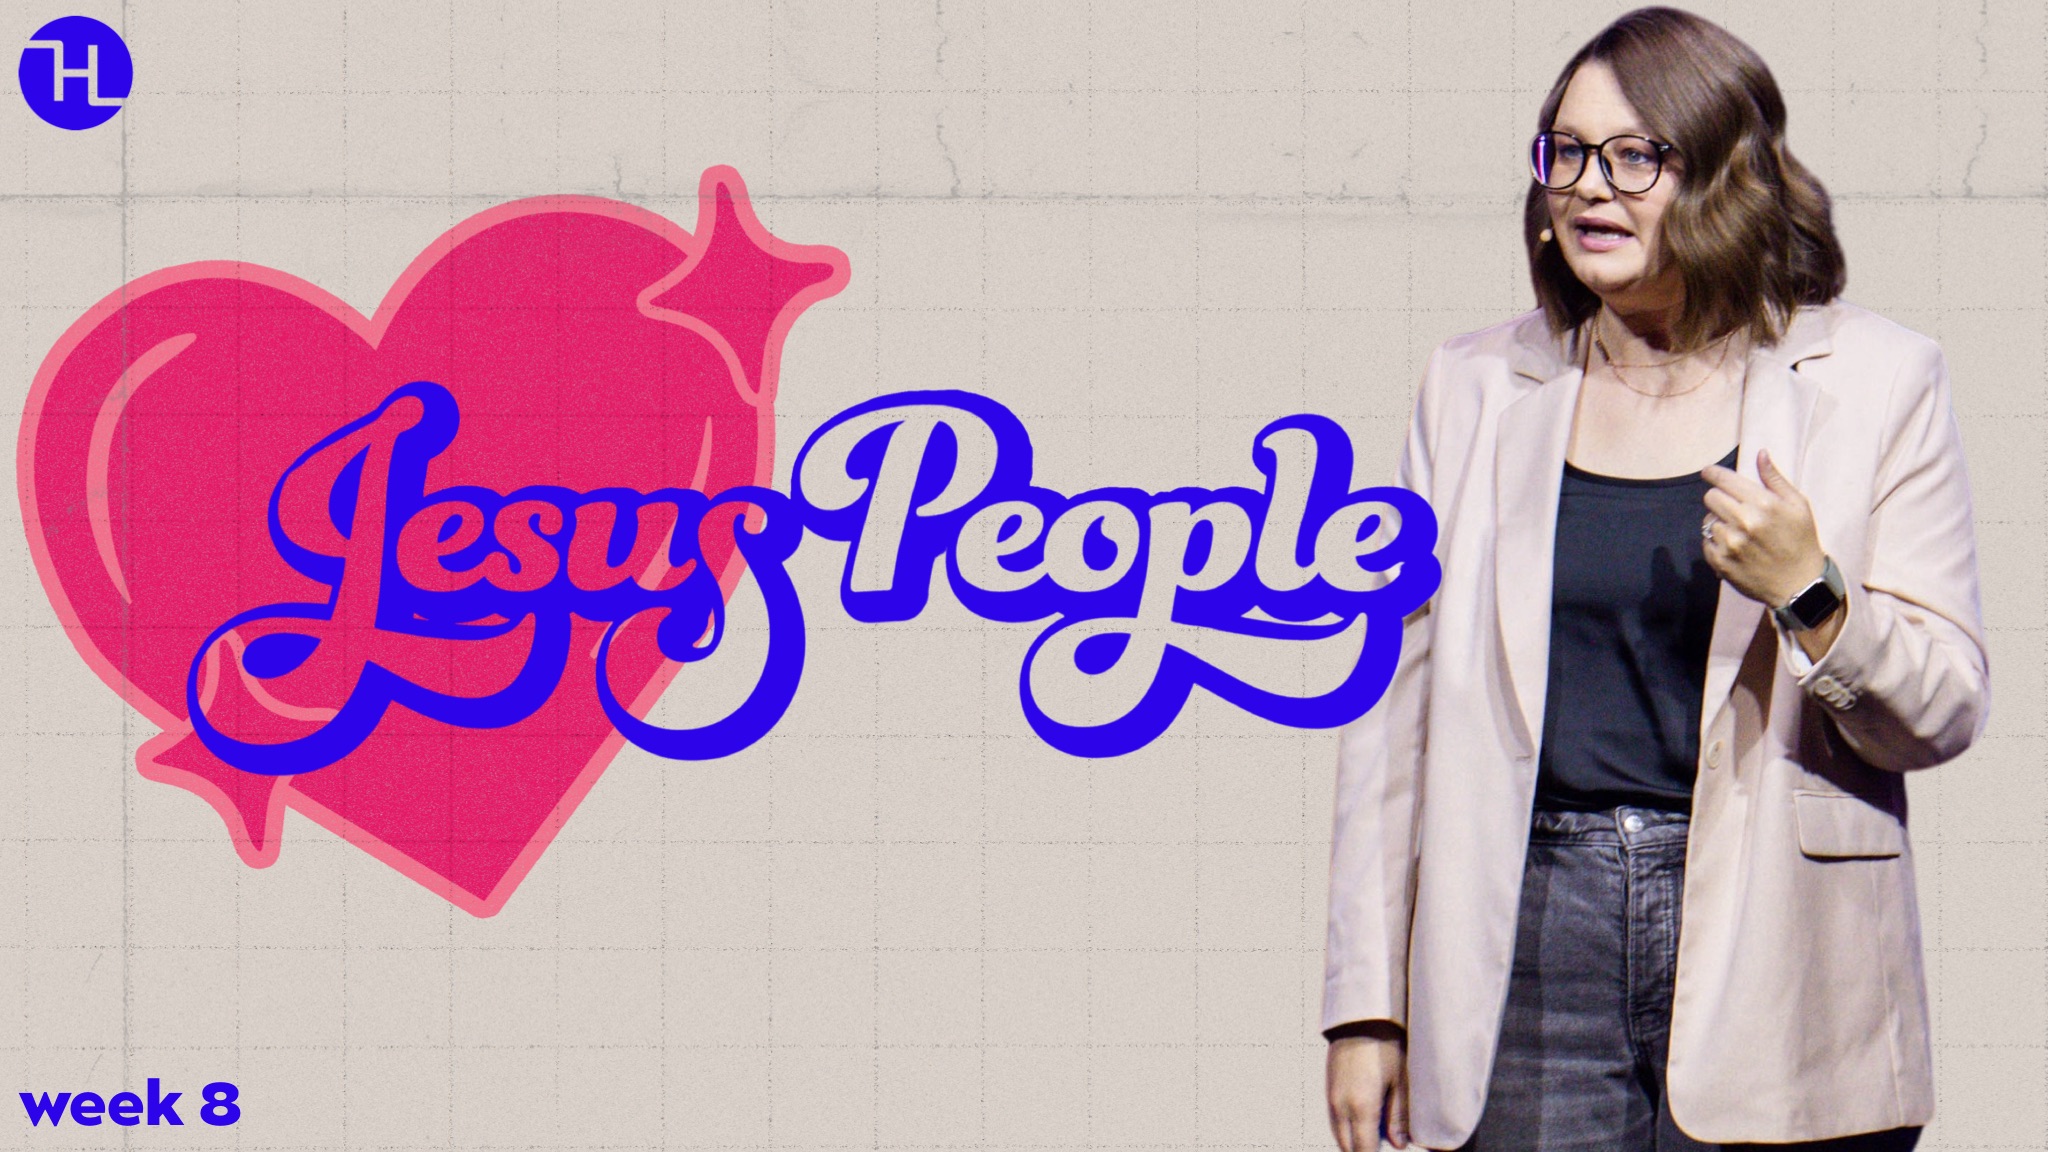 Jesus People week 8